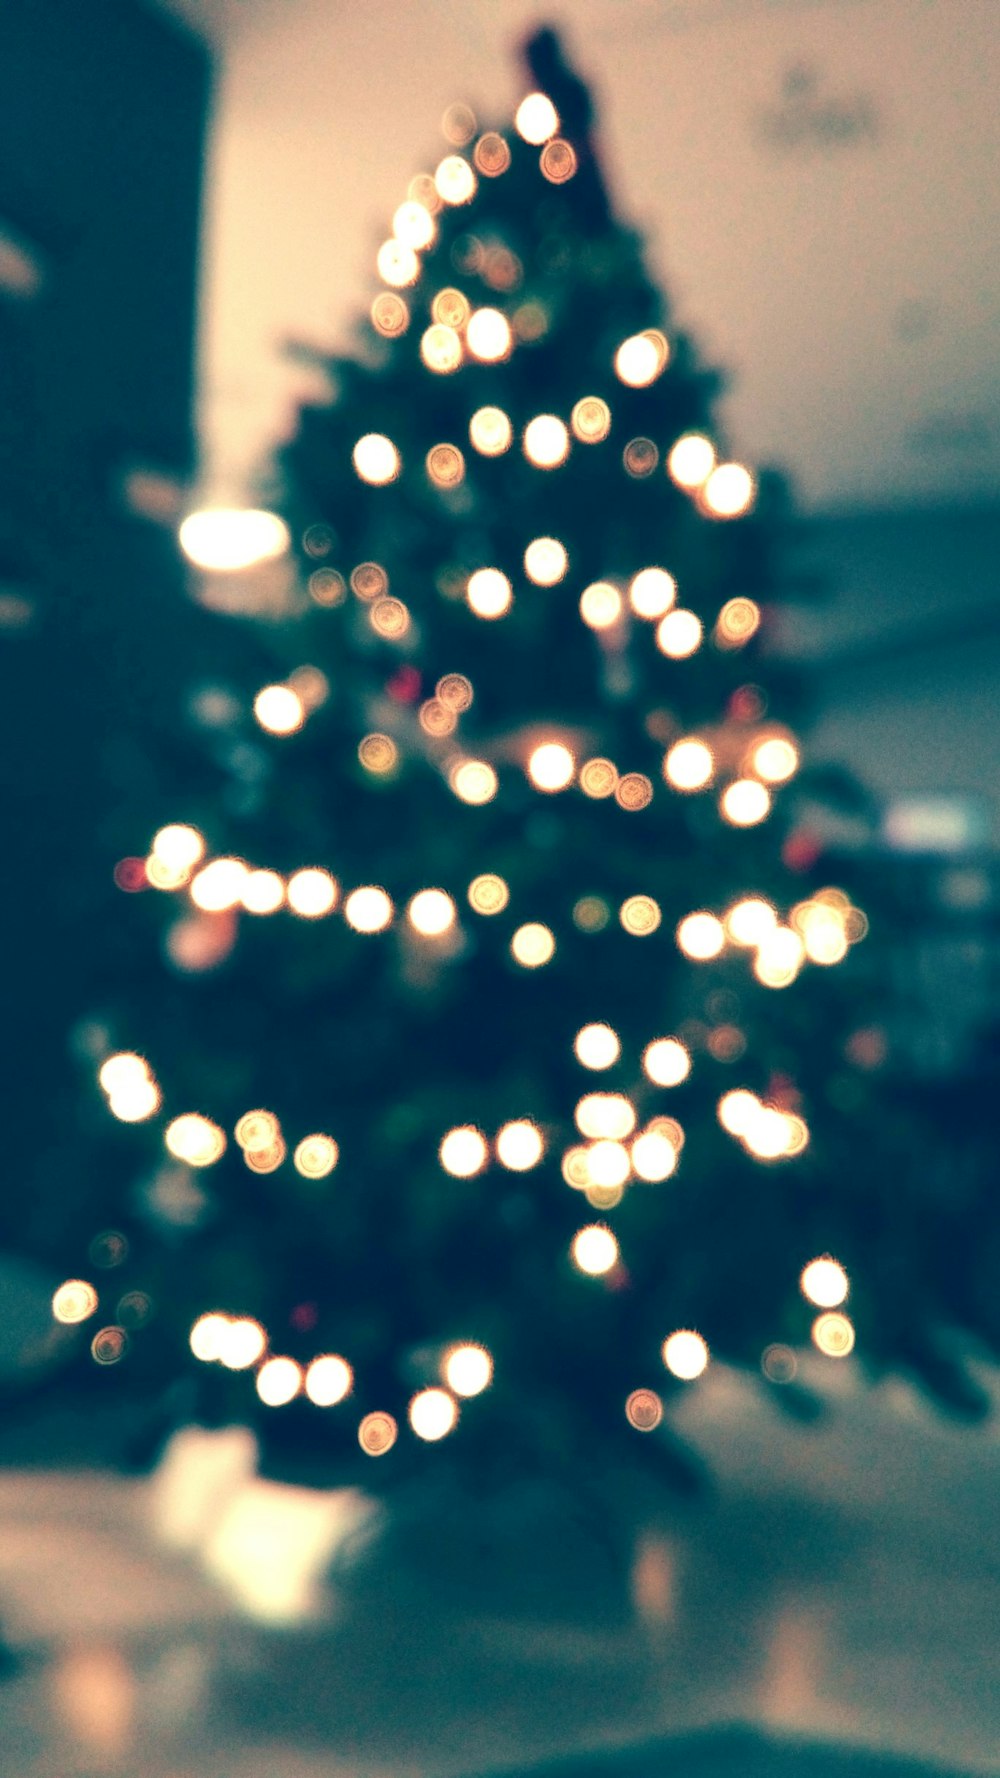 Albero di Natale con le luci della stringa accese